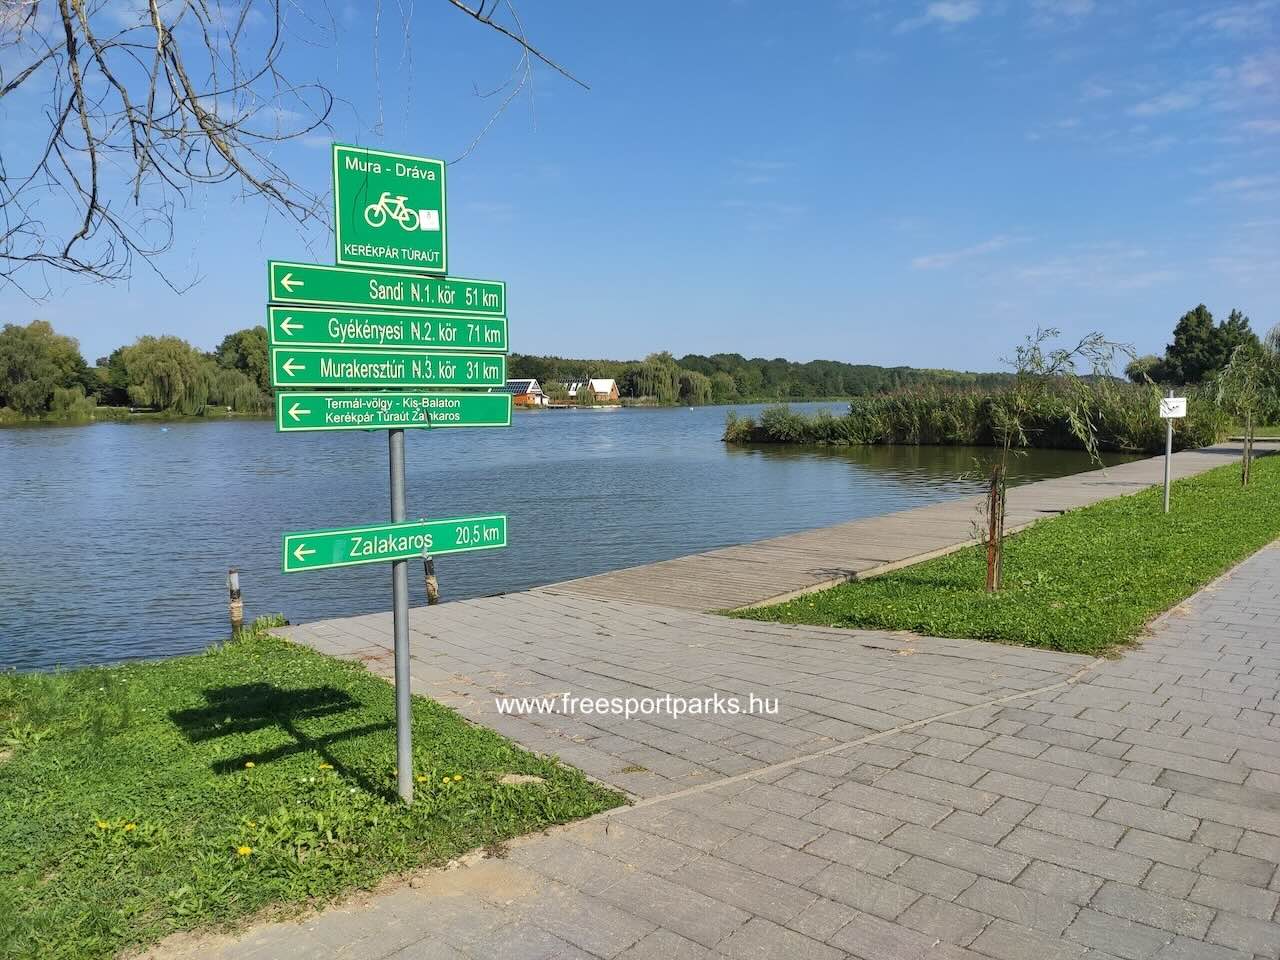 vízibicikli és kajak vízreszálóhely, Csónakázó-tó Nagykanizsa - Free Sport Parks Blog